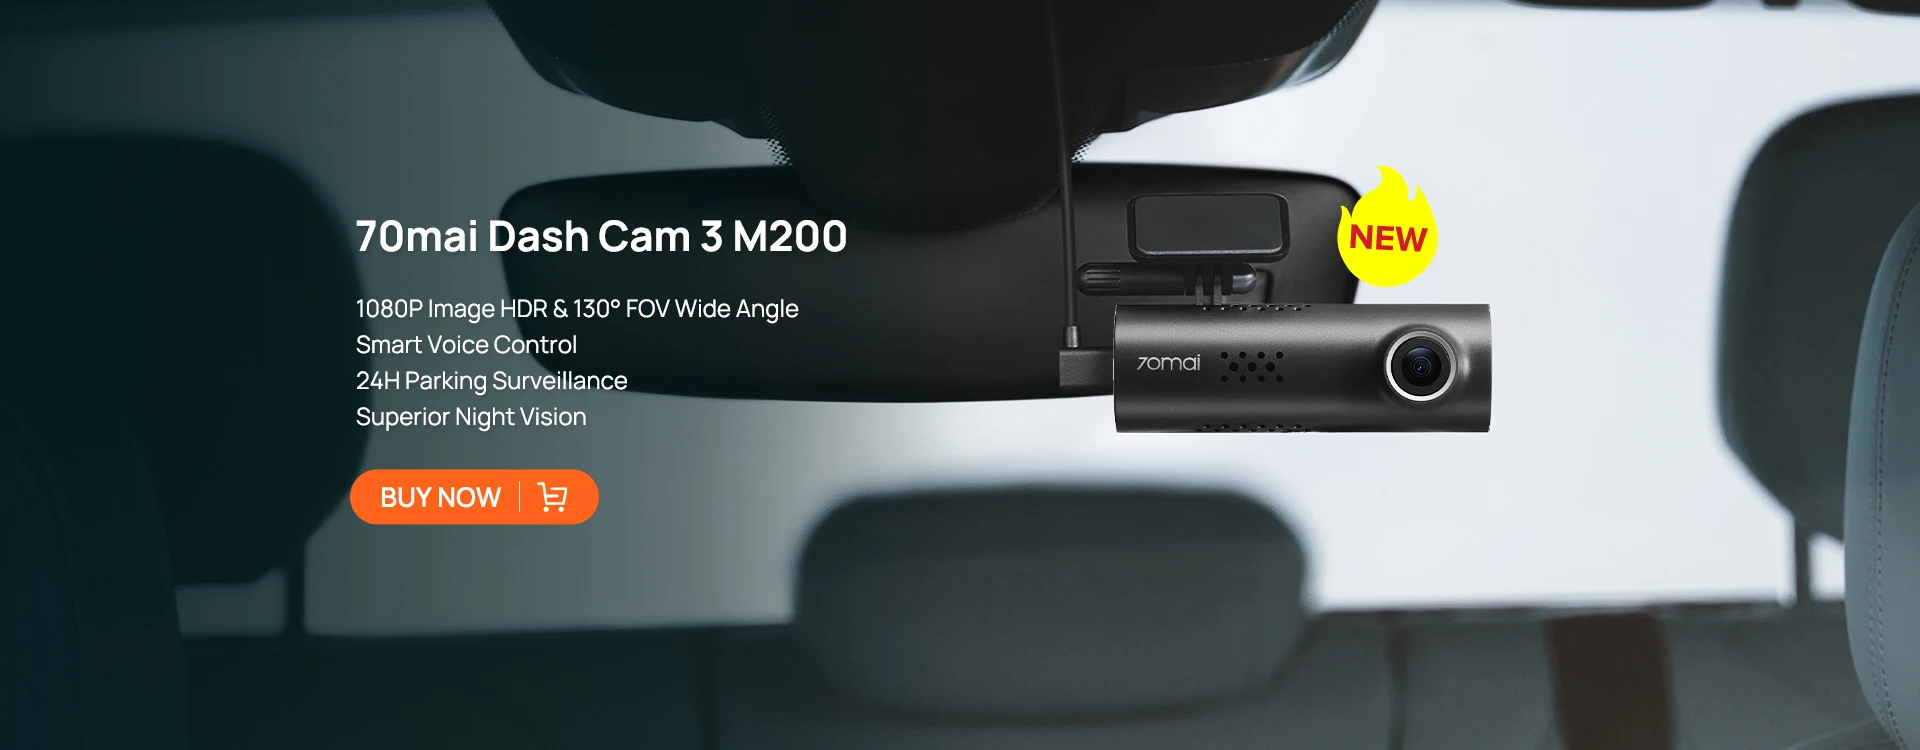 70mai Dash Cam 3 M200 APP Voice Control 1080P HDR Night Vision 24H